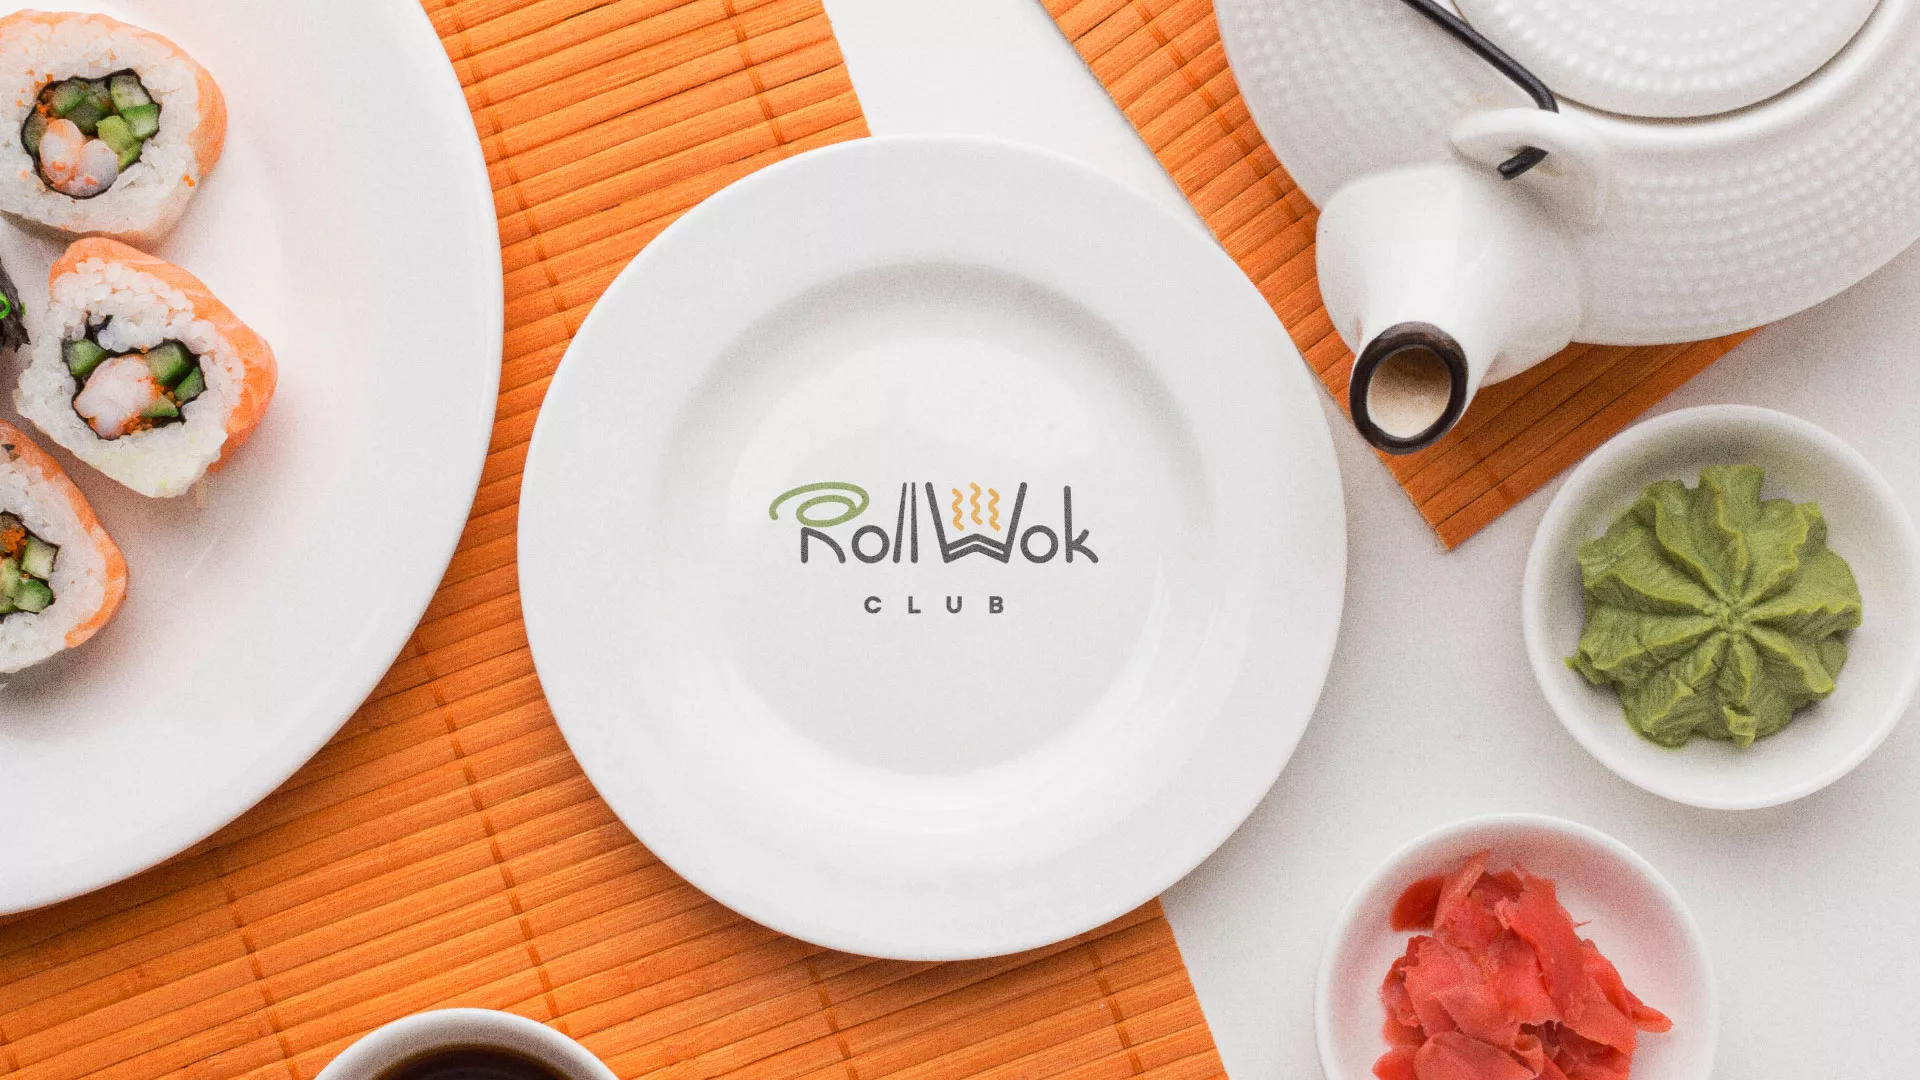 Разработка логотипа и фирменного стиля суши-бара «Roll Wok Club» в Кургане